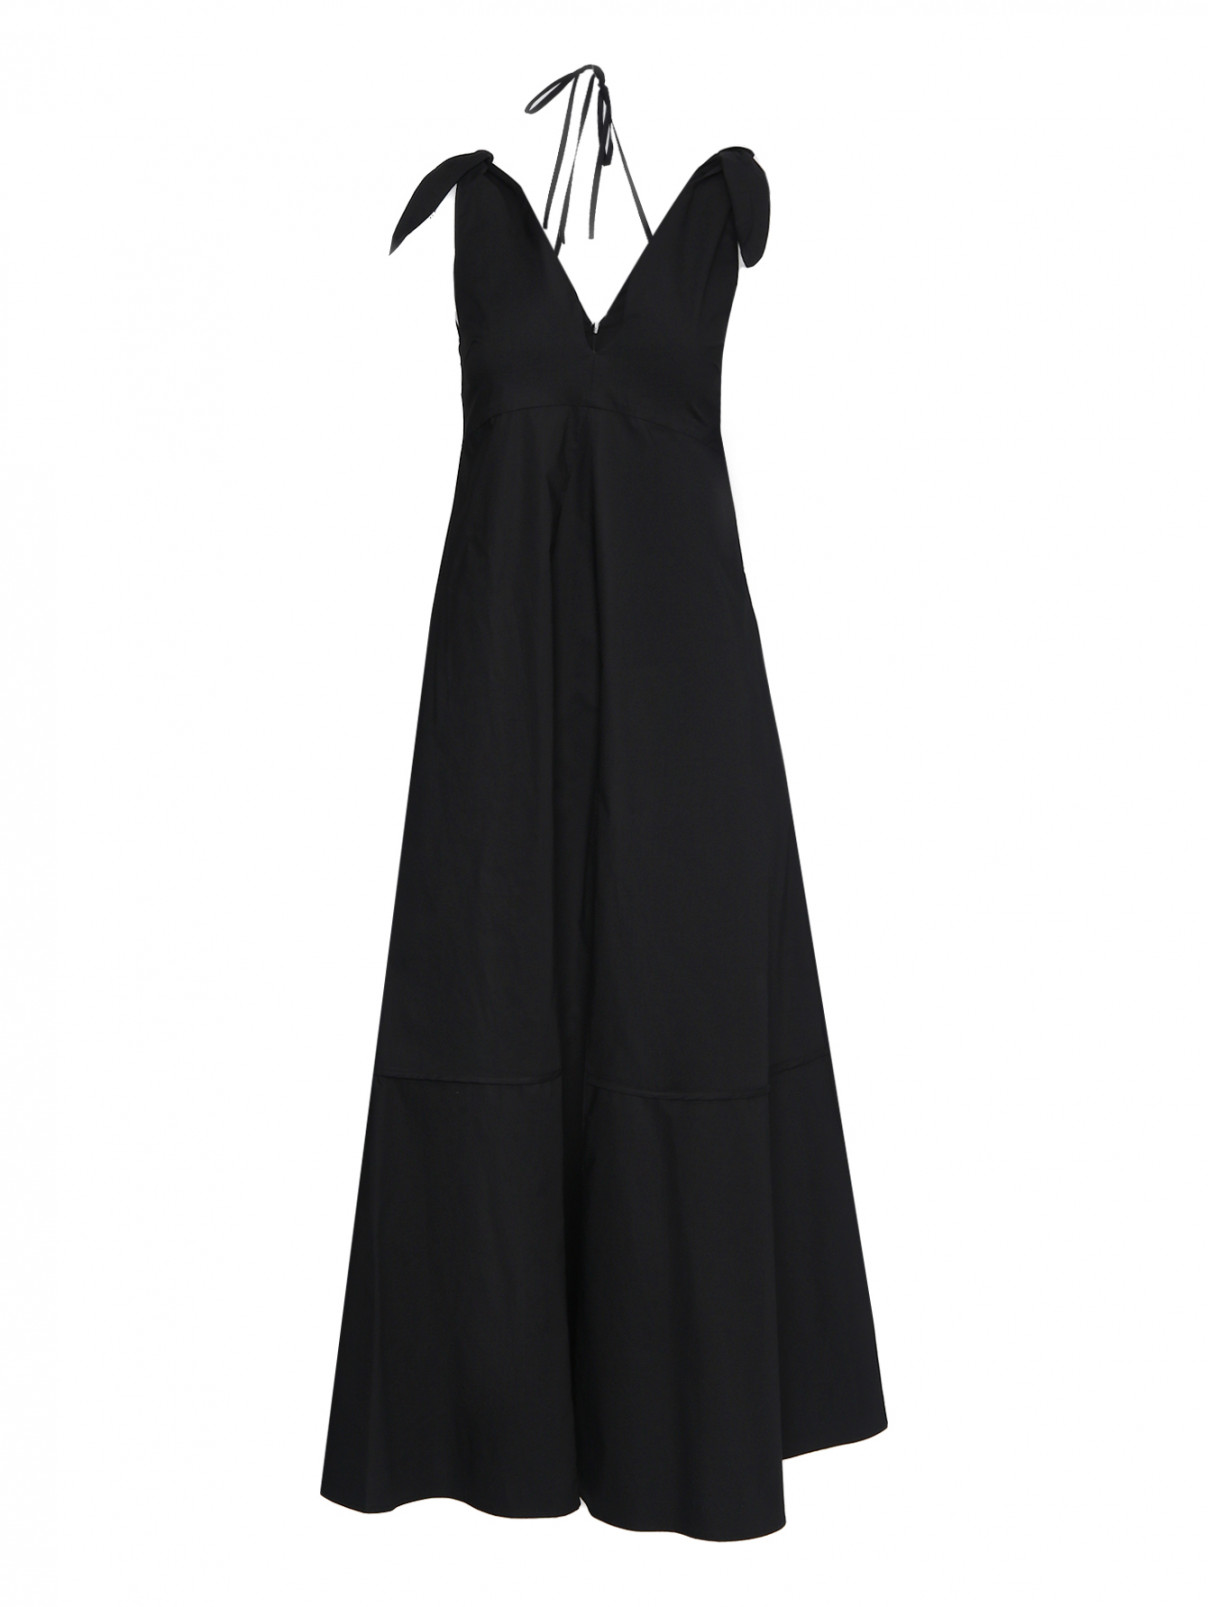 Платье из хлопка на завязках Erika Cavallini  –  Общий вид  – Цвет:  Черный